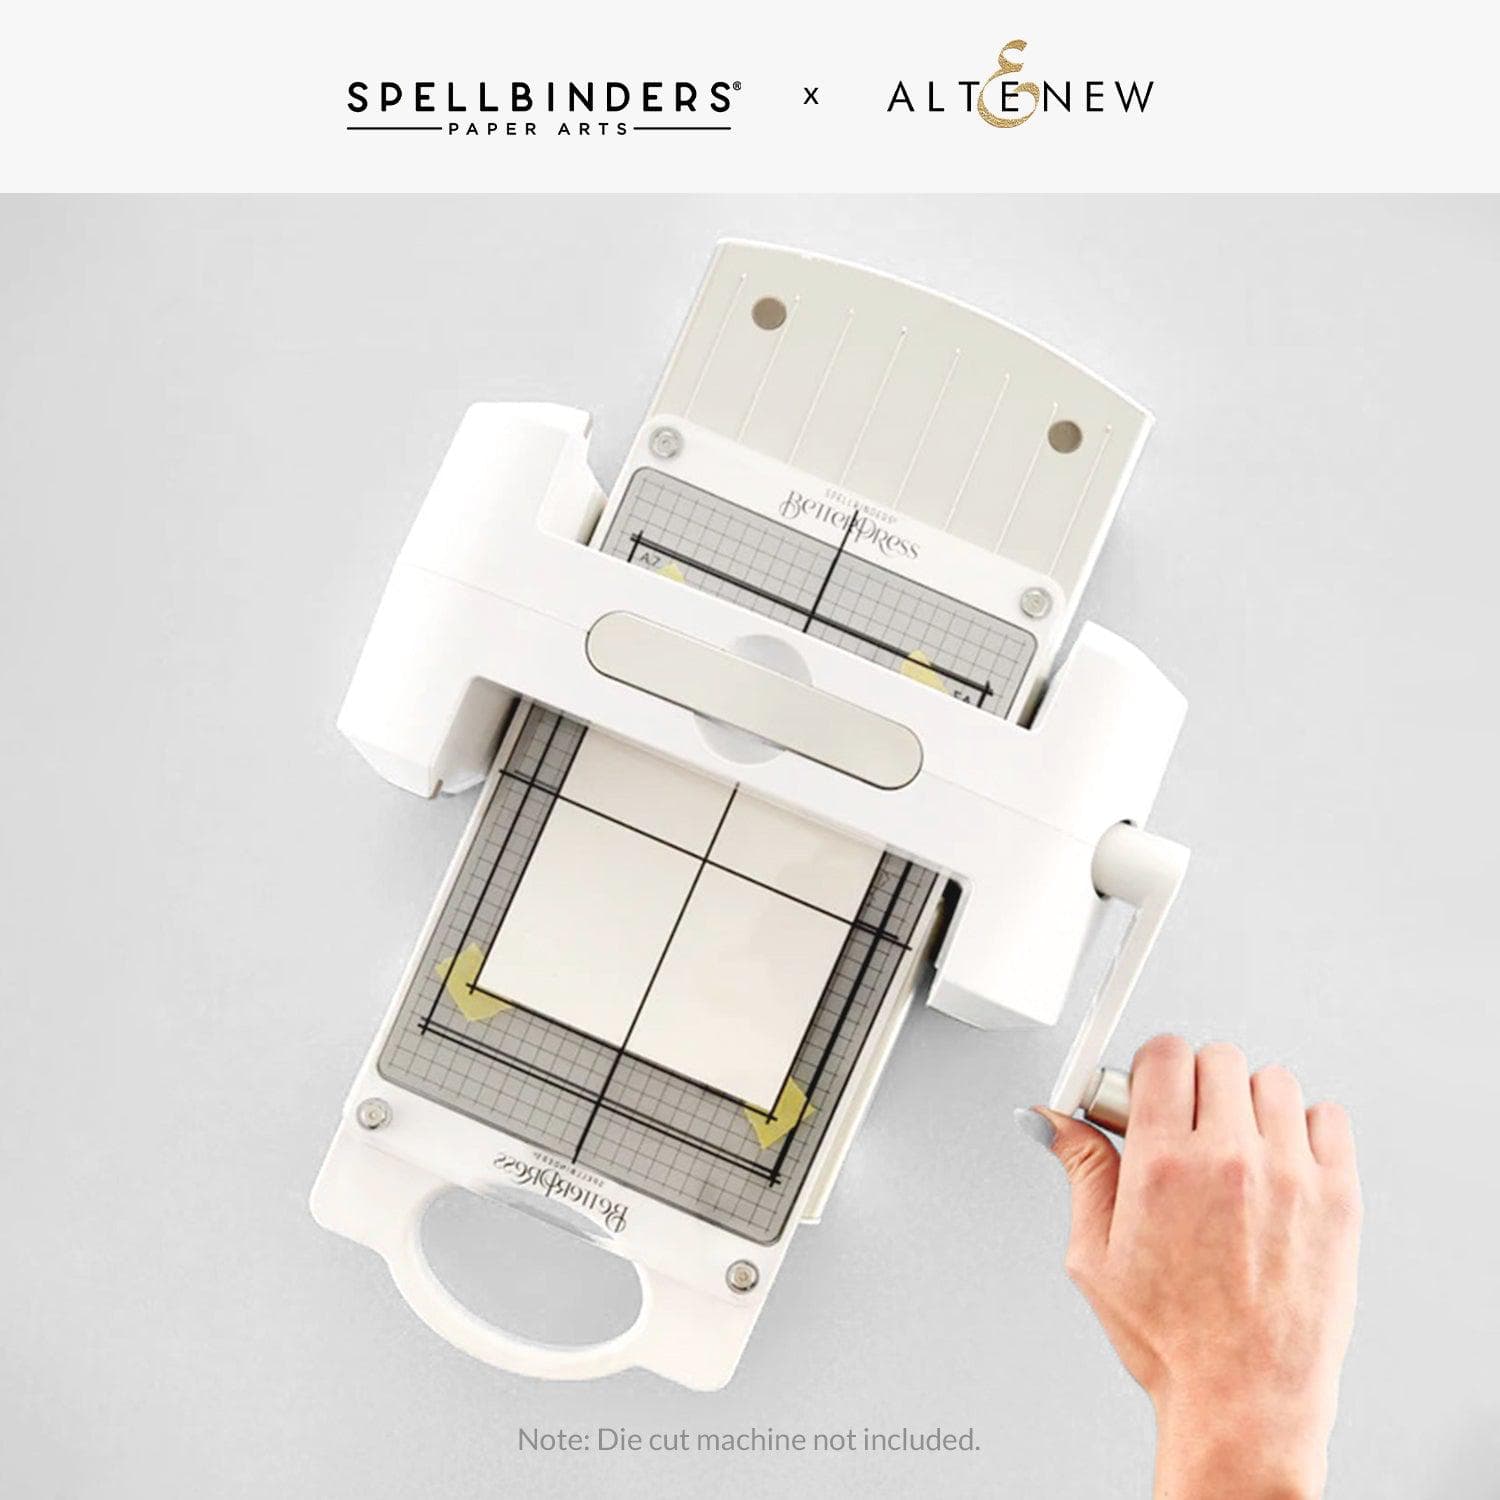 Spellbinders BetterPress Letterpress System Press Plate-Most Wonderful Time